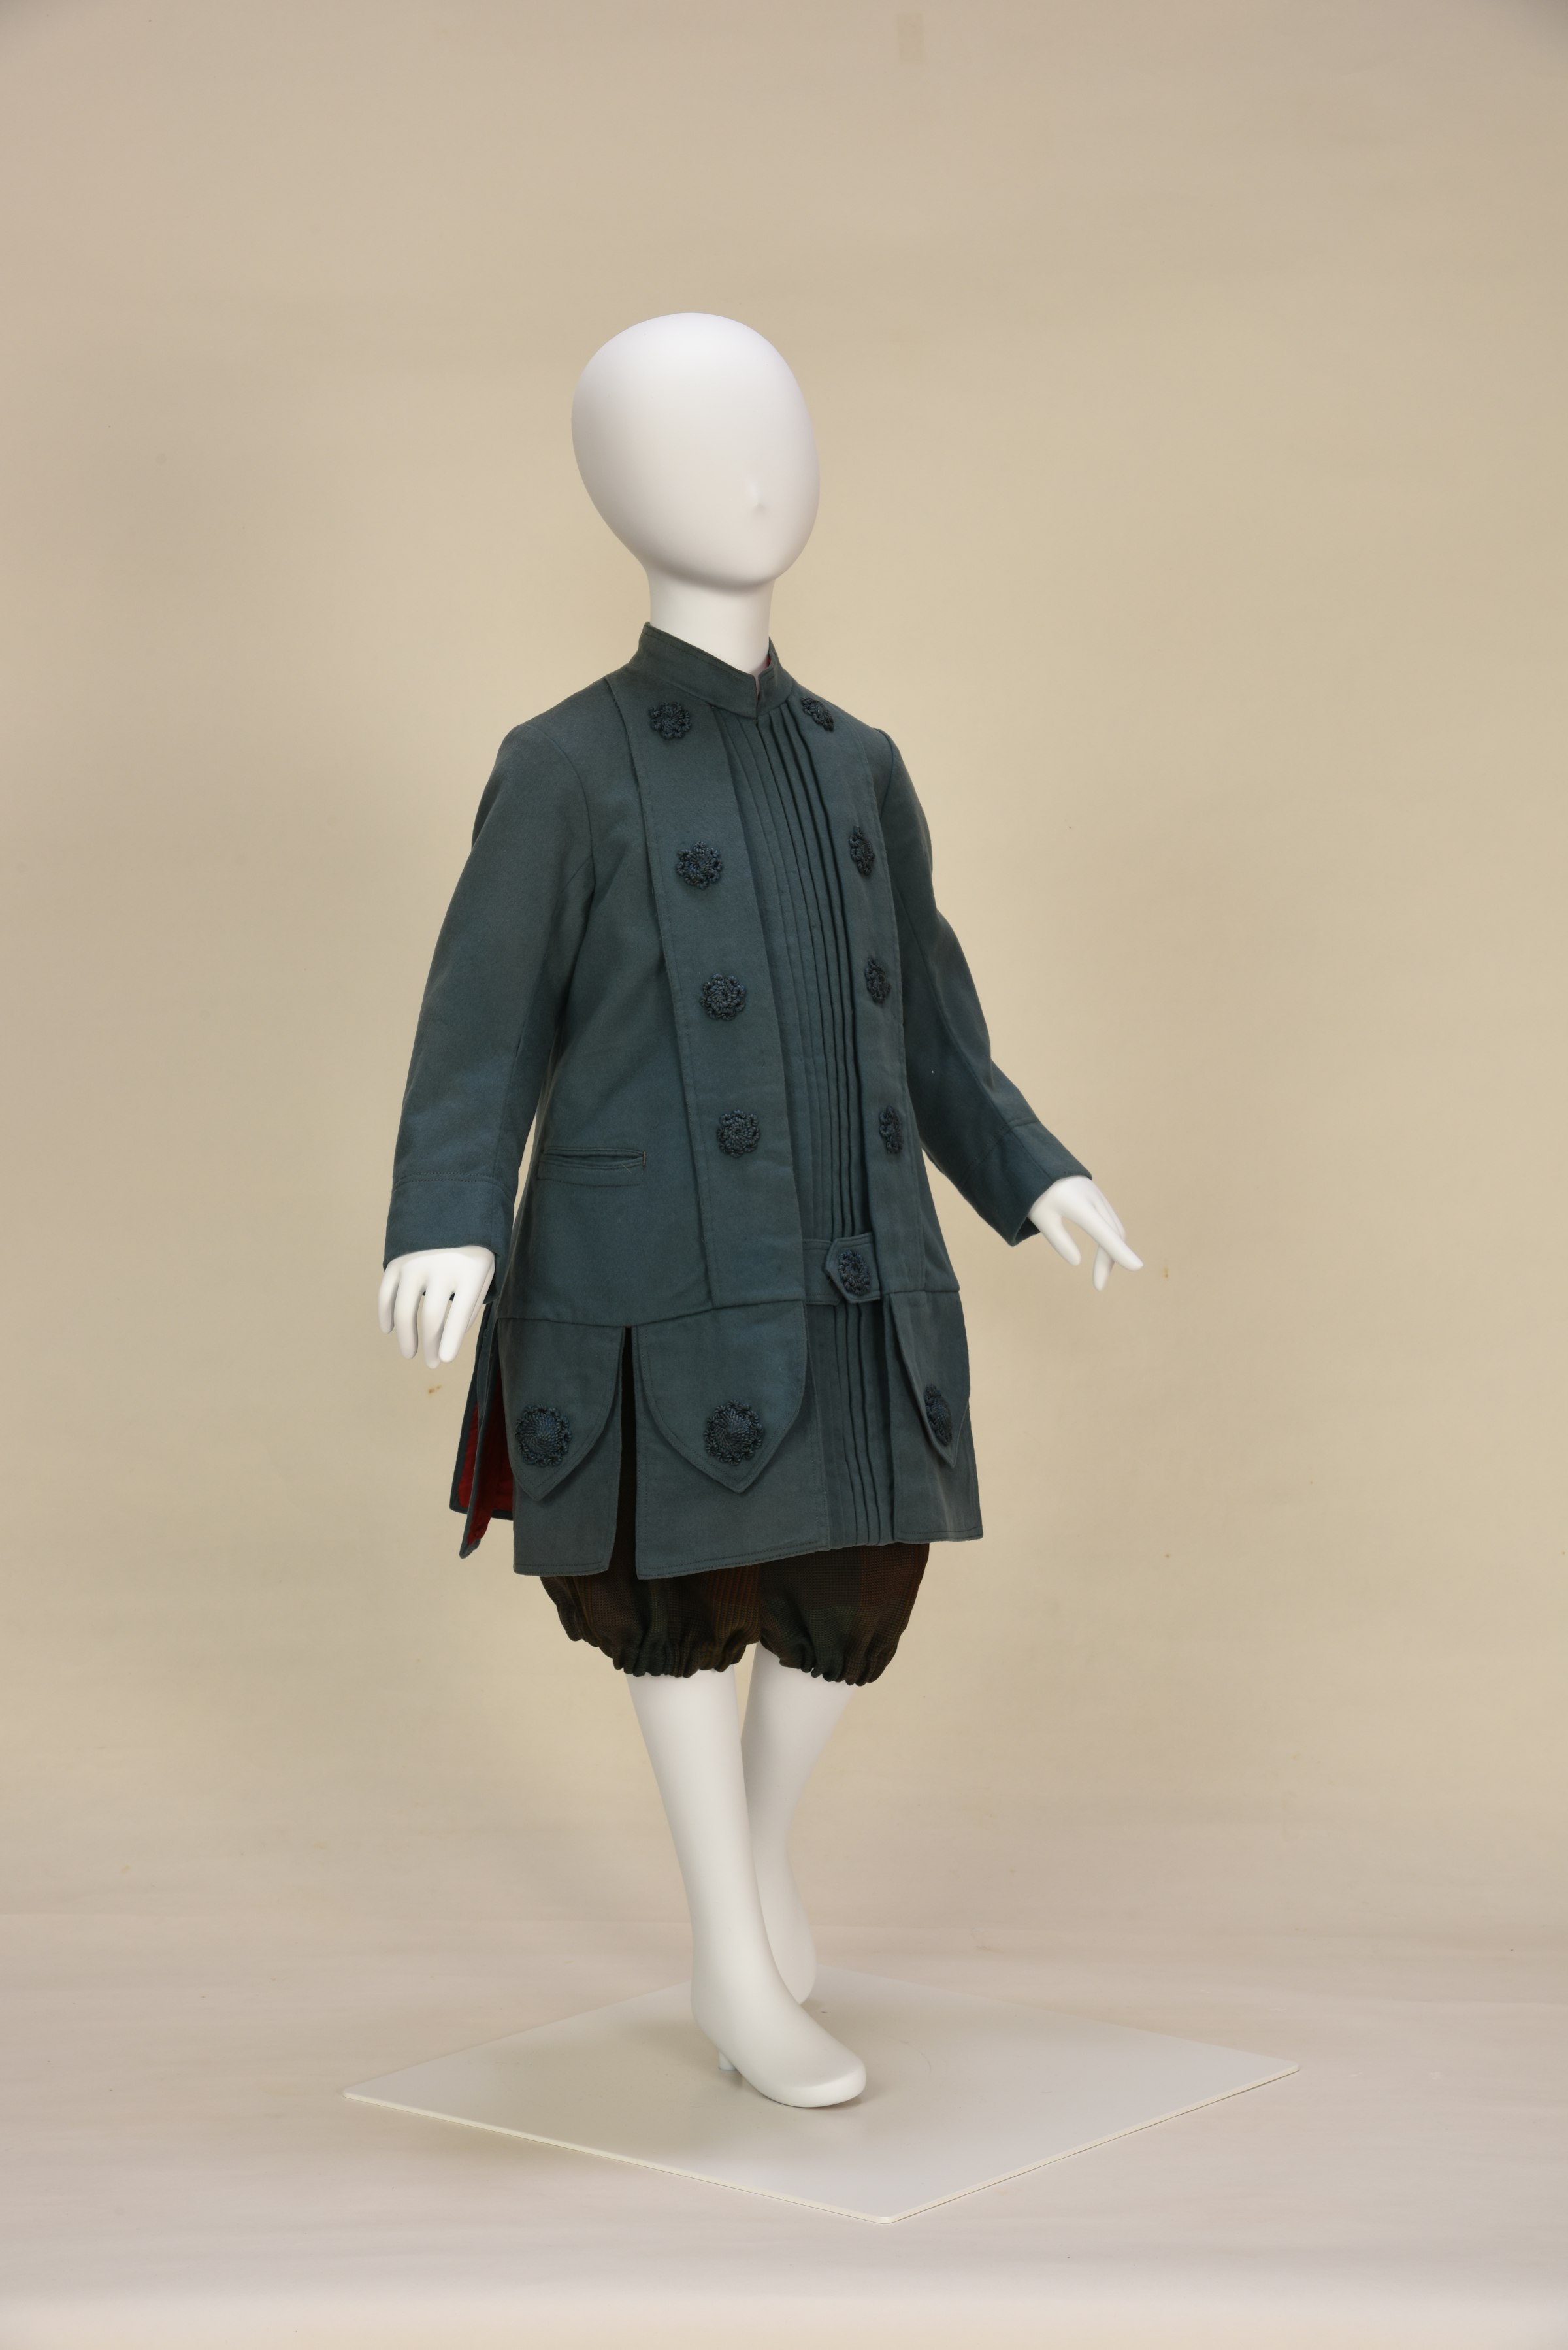 画像: ルーヴル百貨店で販売された男児用の上着、1880年代後期、島根県立石見美術館所蔵・撮影